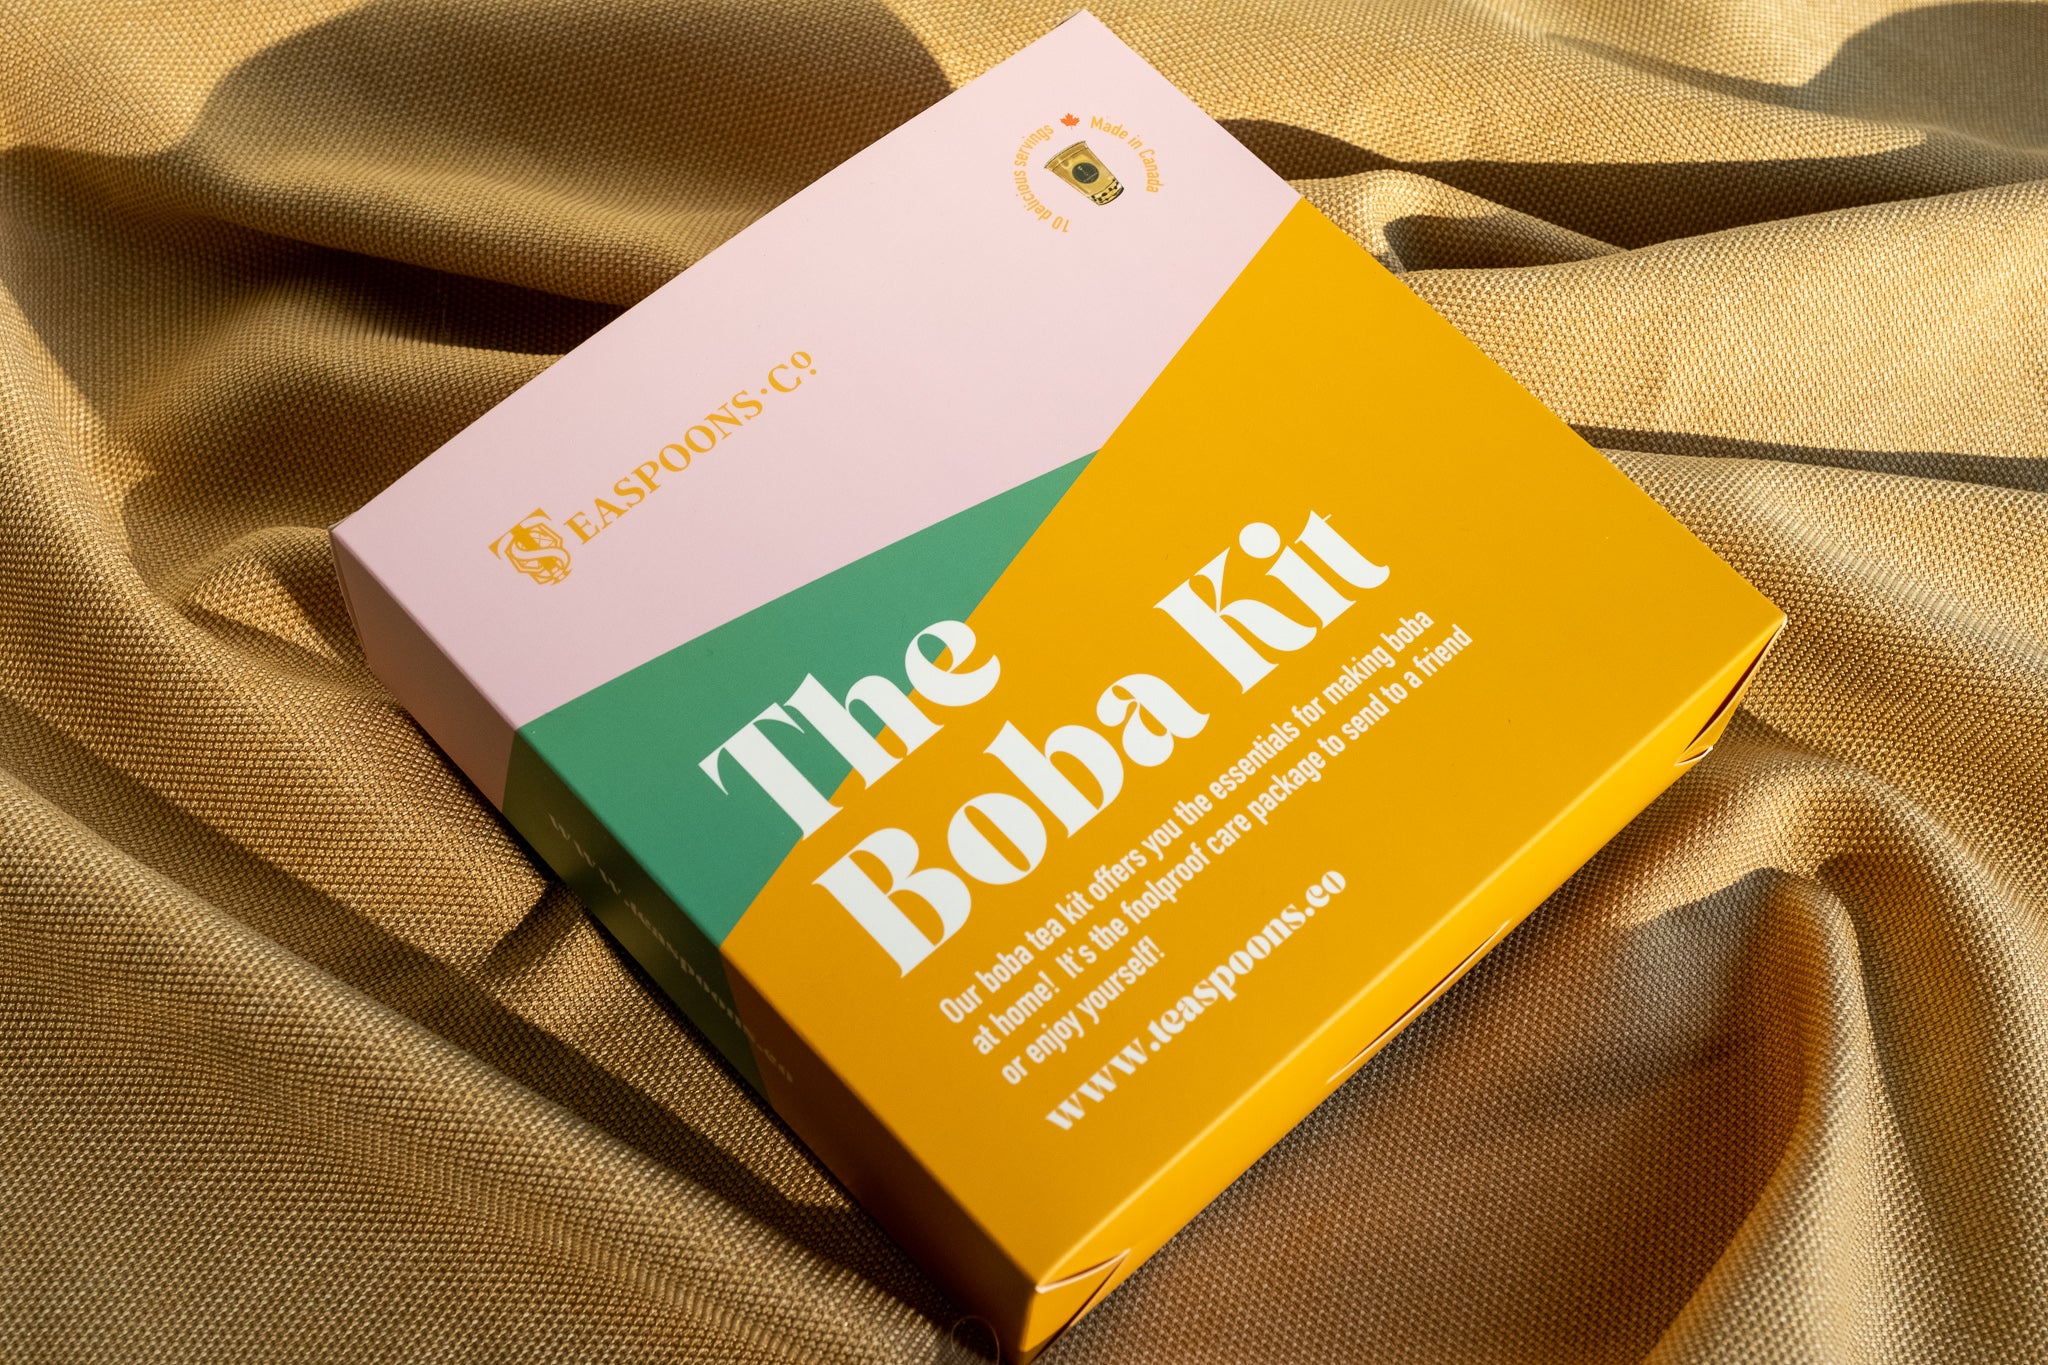 The Boba Kit